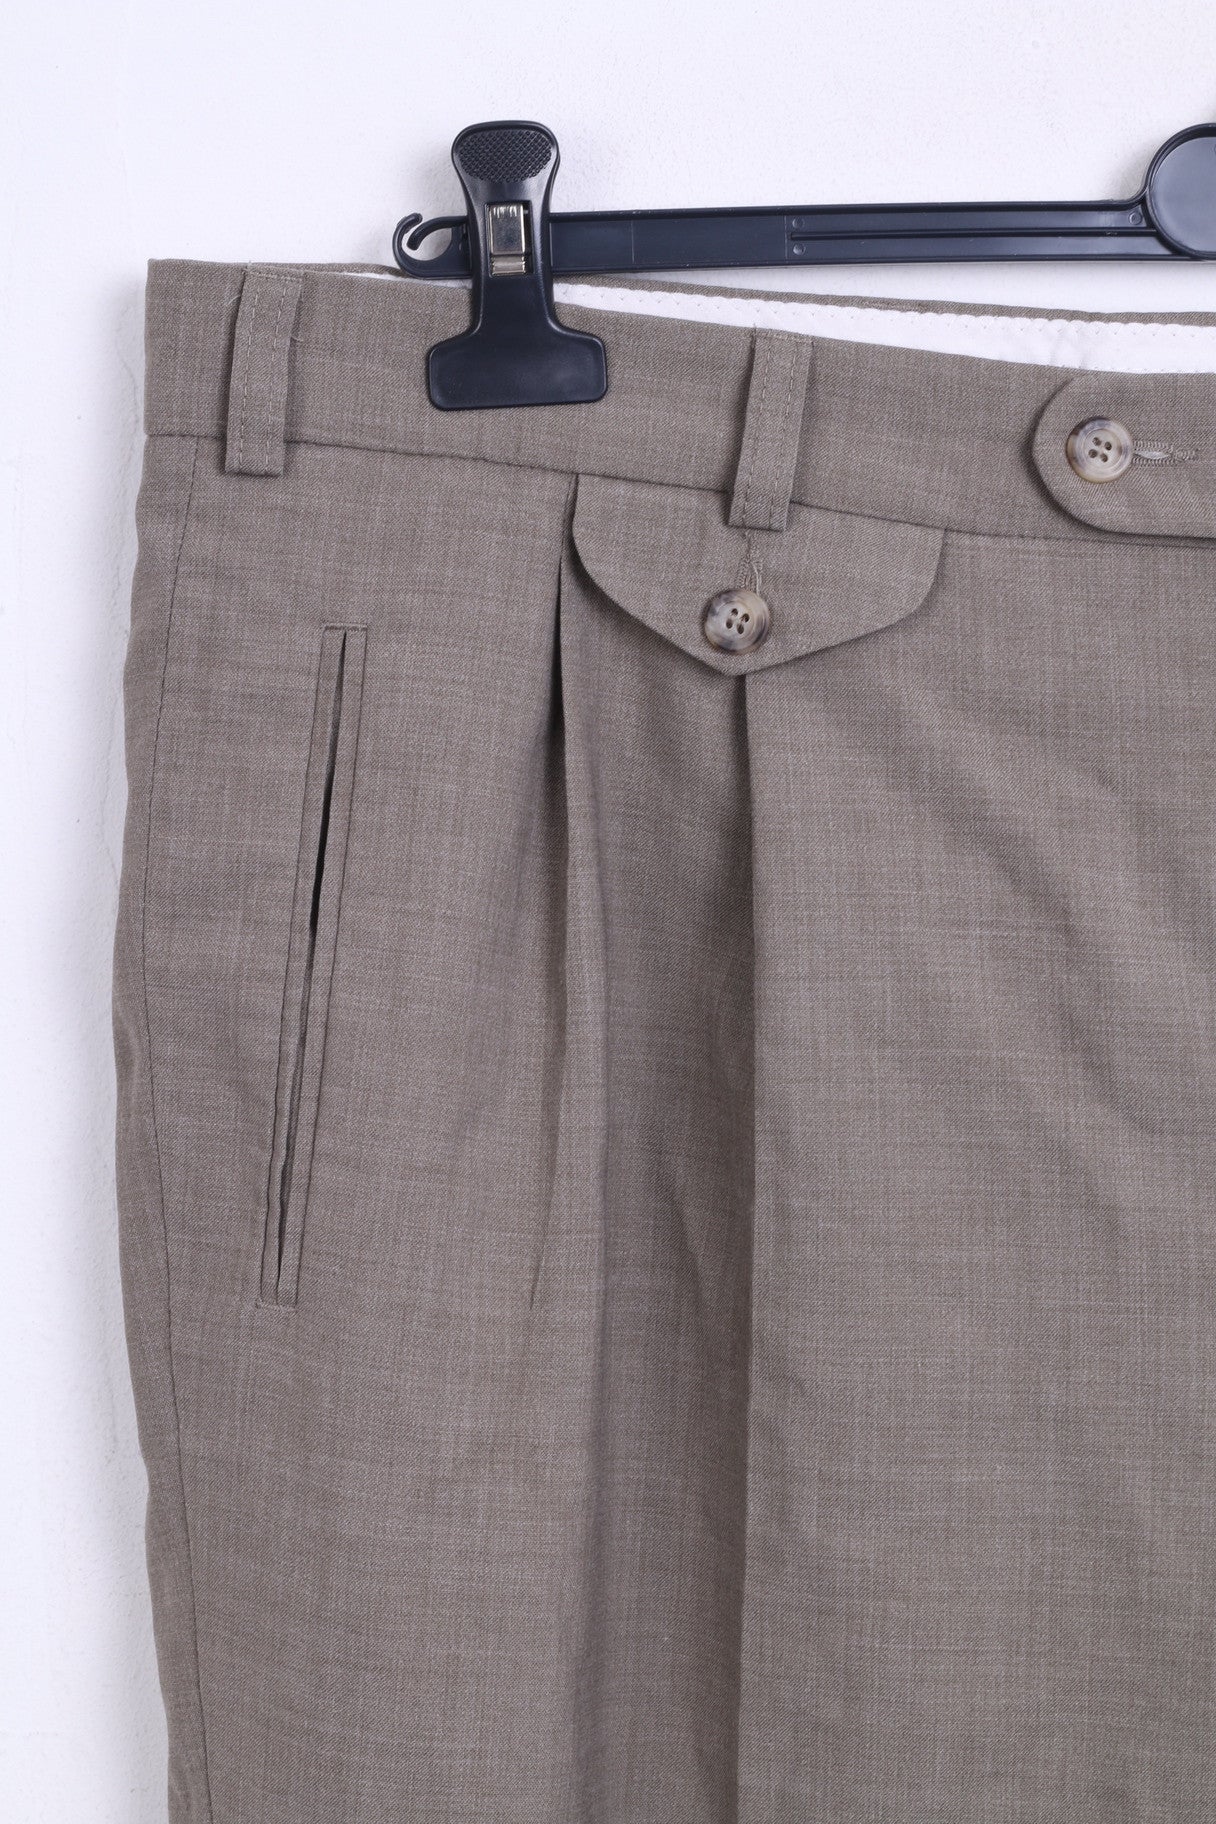 Sunde Mens XL Elegant Trousers Suit Pants Brown Wool - RetrospectClothes